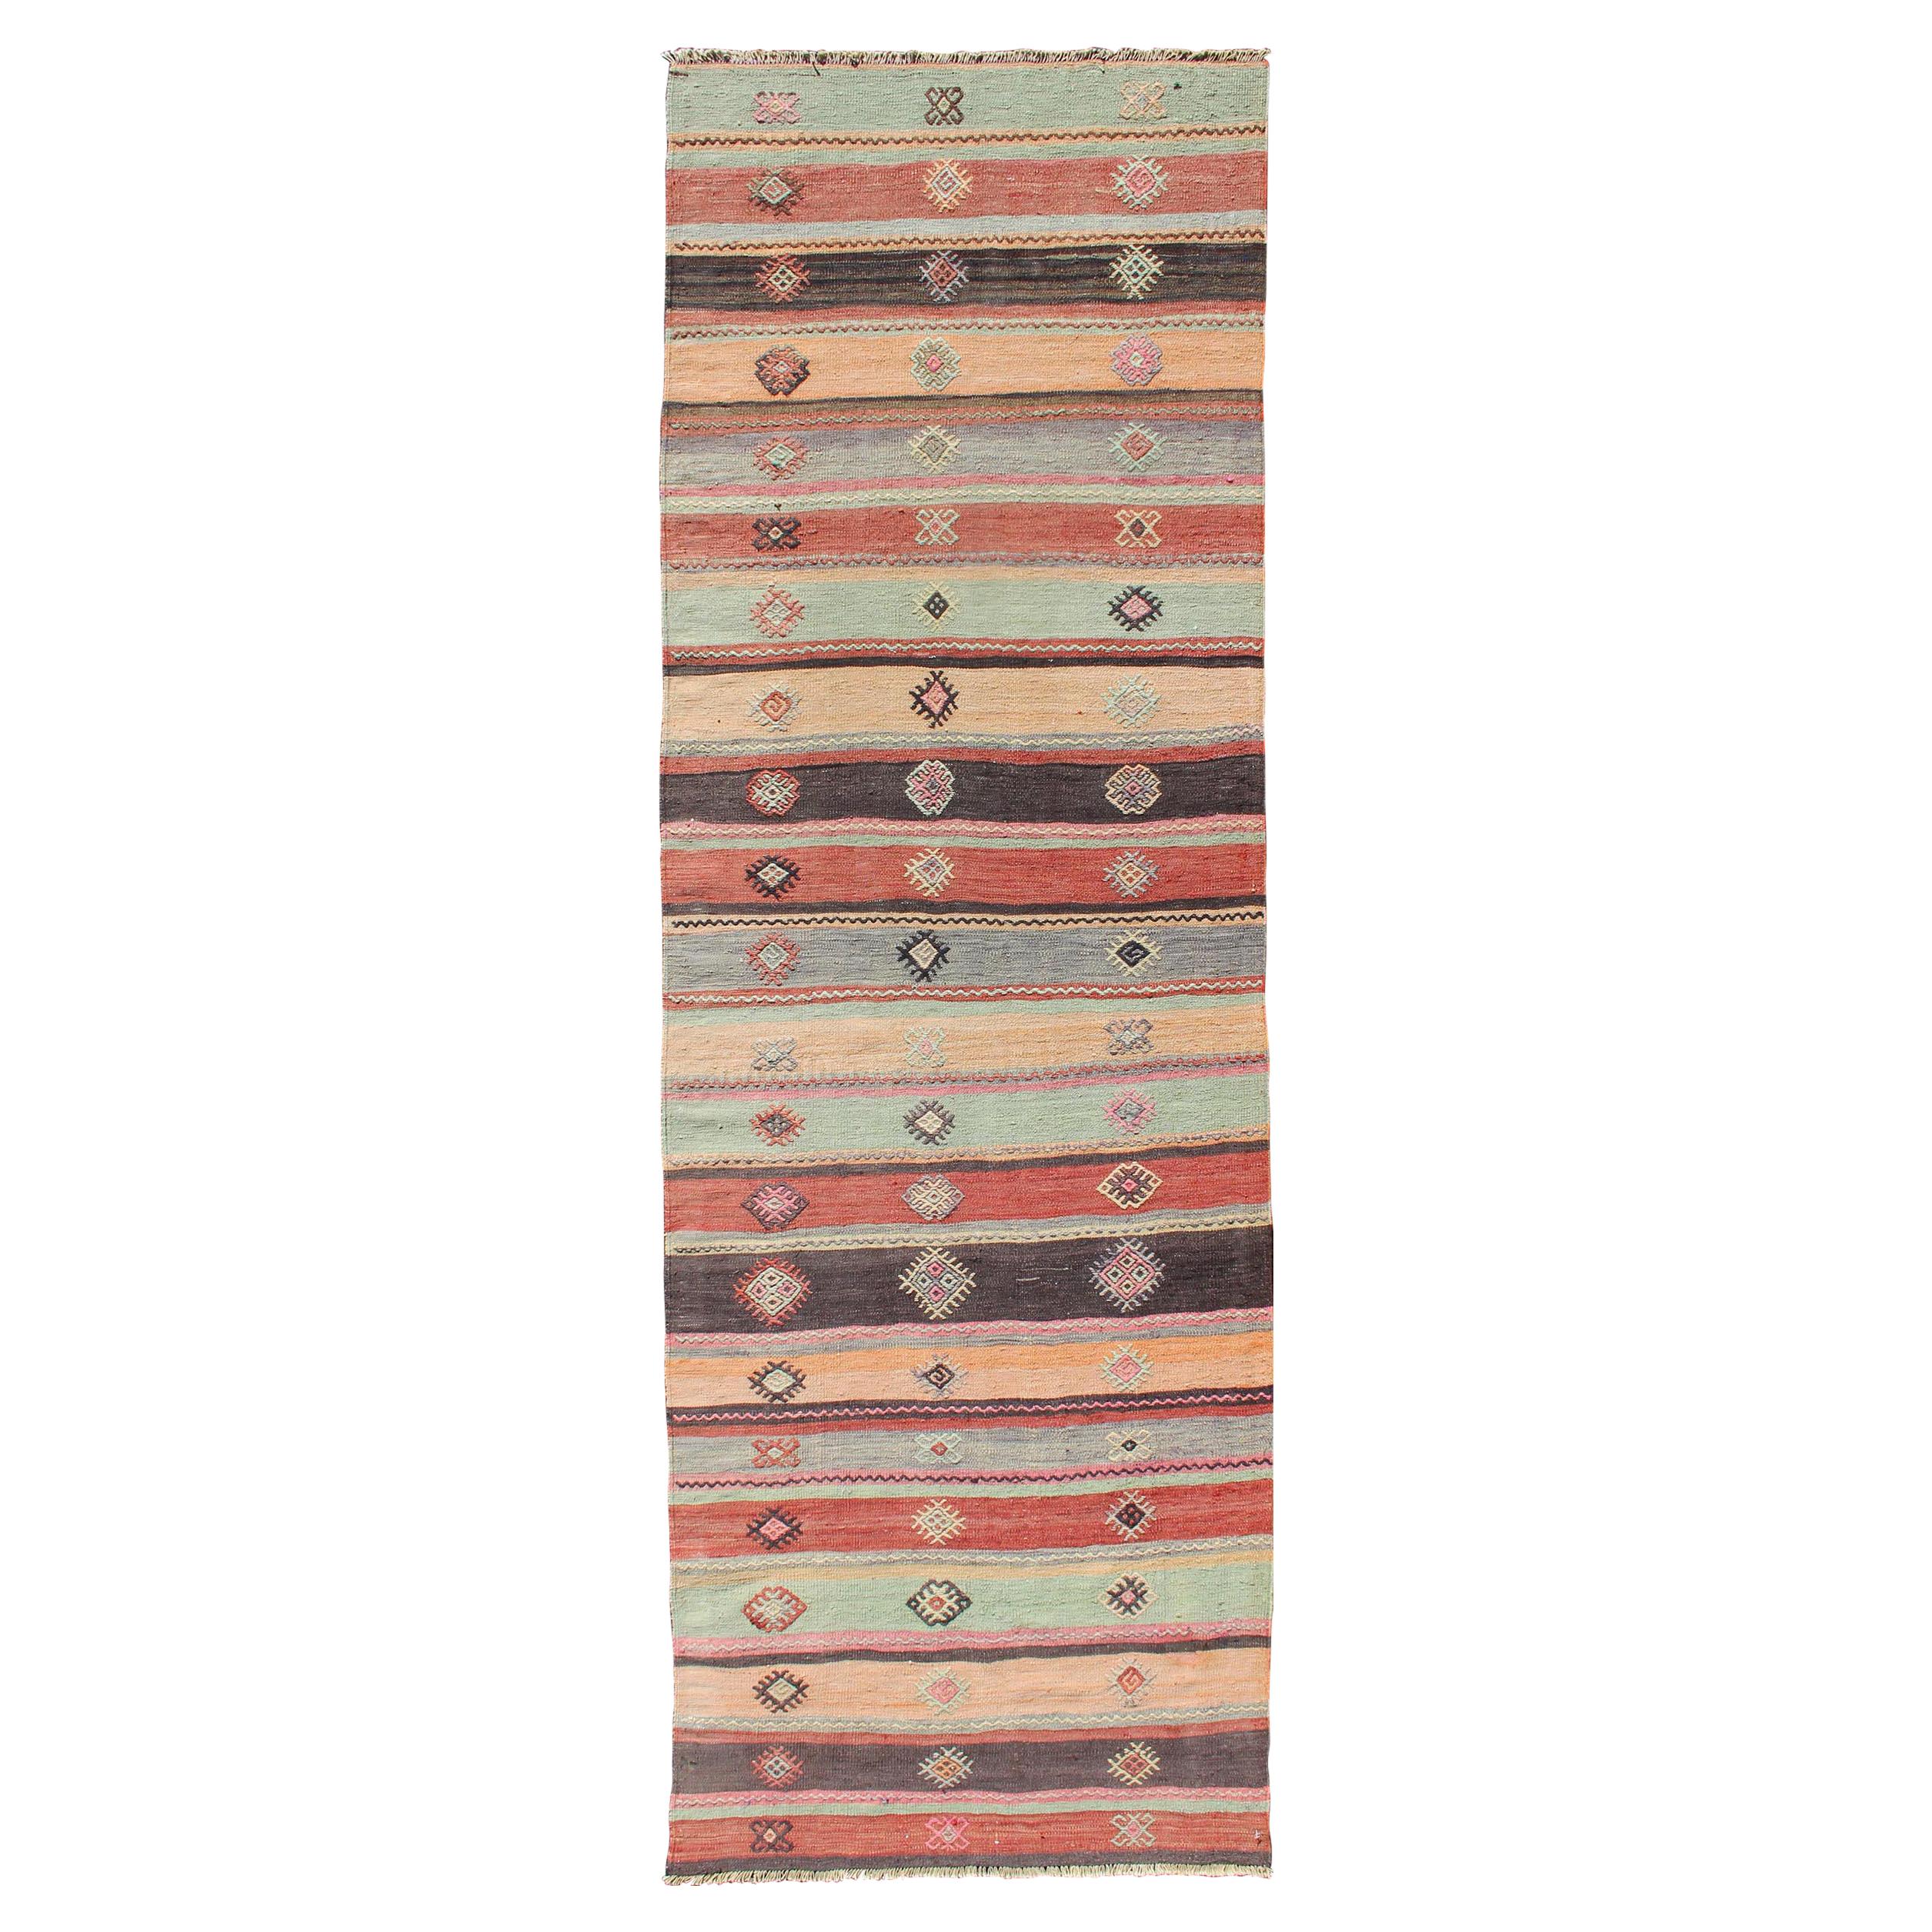 Tapis de couloir Kilim vintage coloré brodé avec rayures et imprimés géométriques